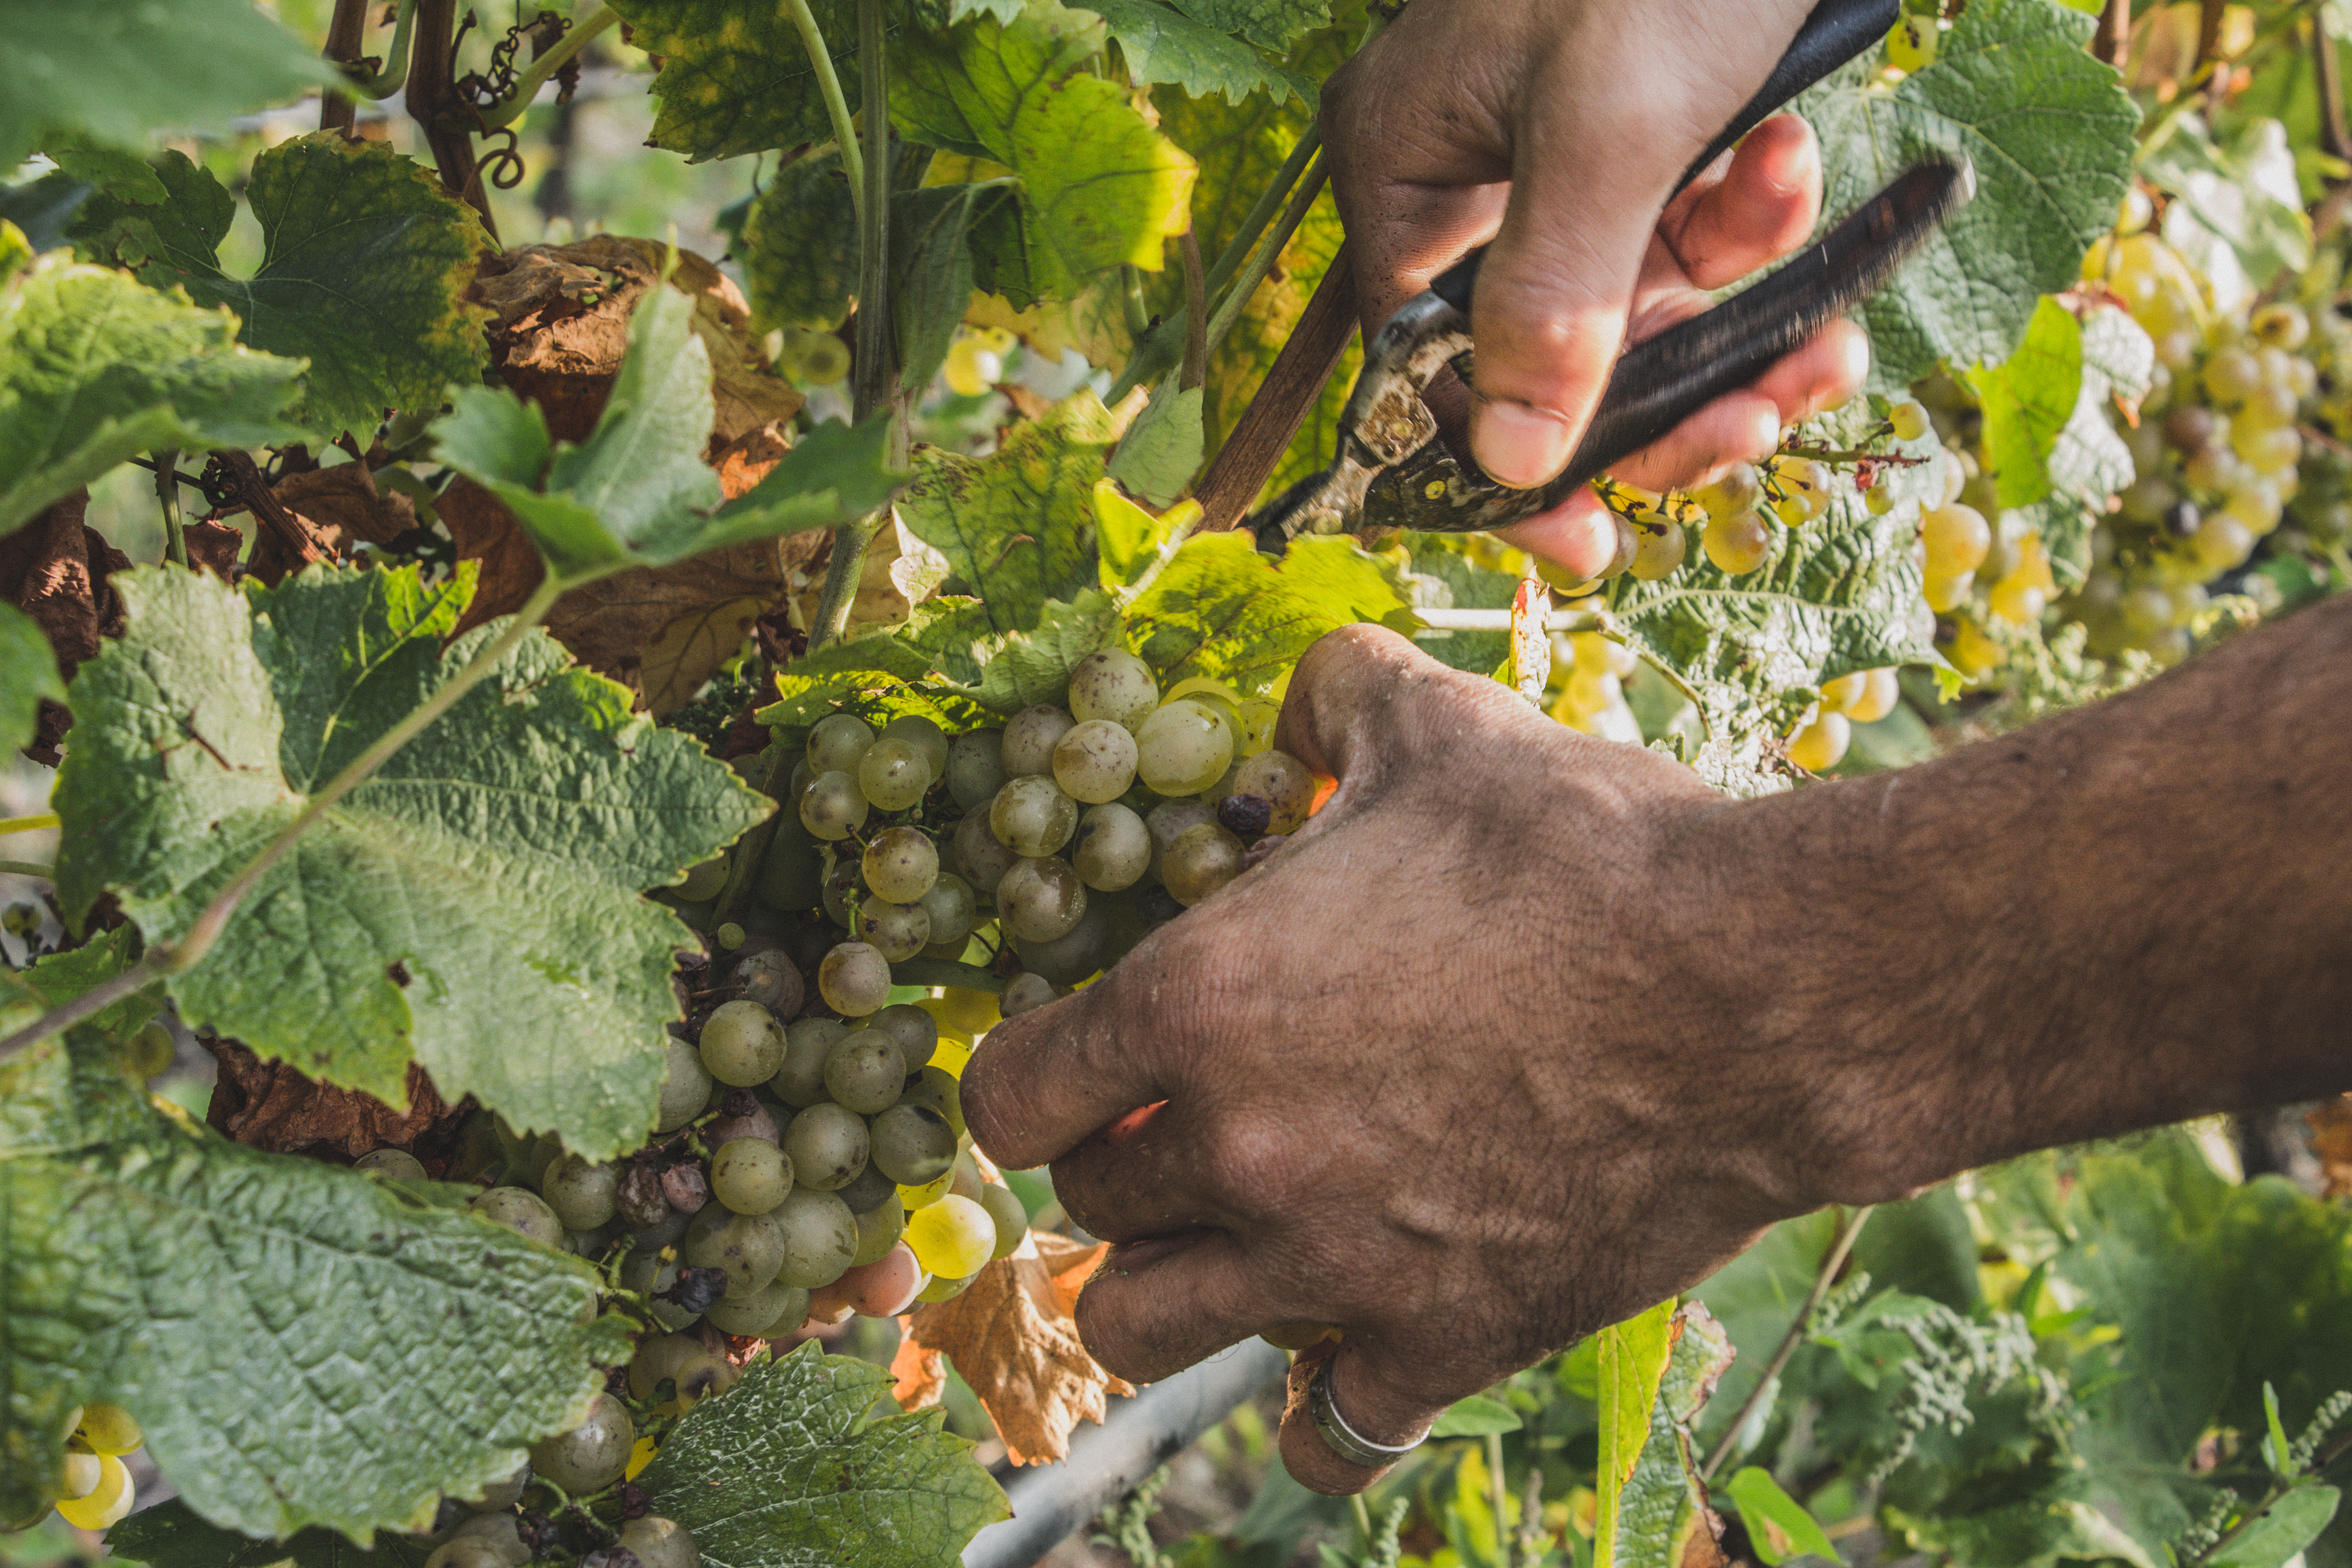 Vendemmia lunga e per single vineyards, Monte Zovo punta sulla valorizzazione dei terroir